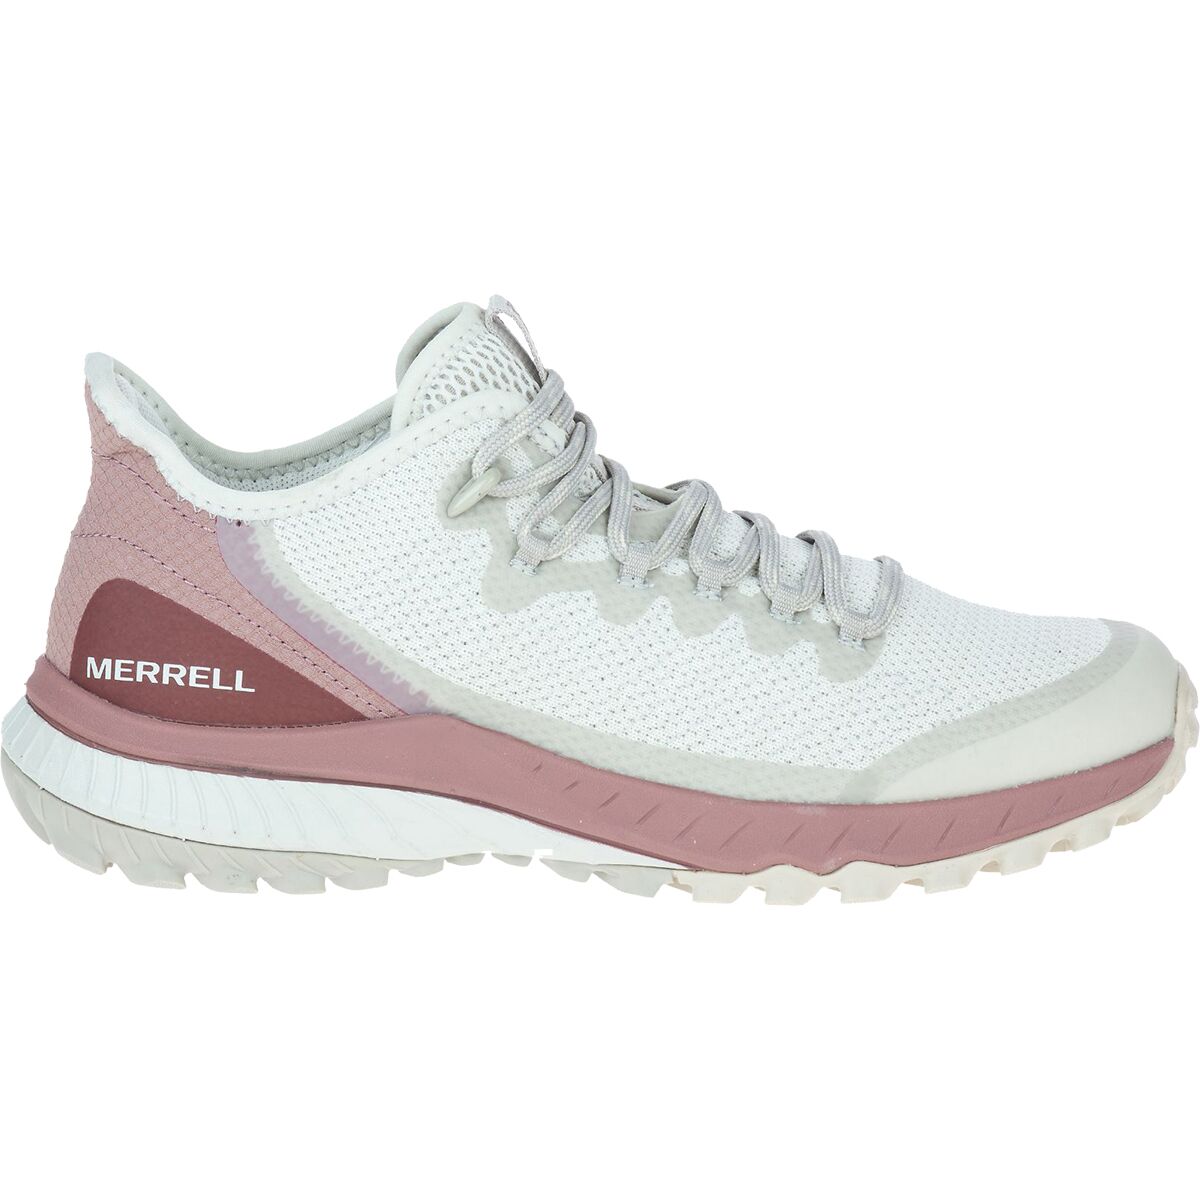 Formand frimærke Relativ størrelse Merrell Bravada Hiking Shoe - Women's - Footwear